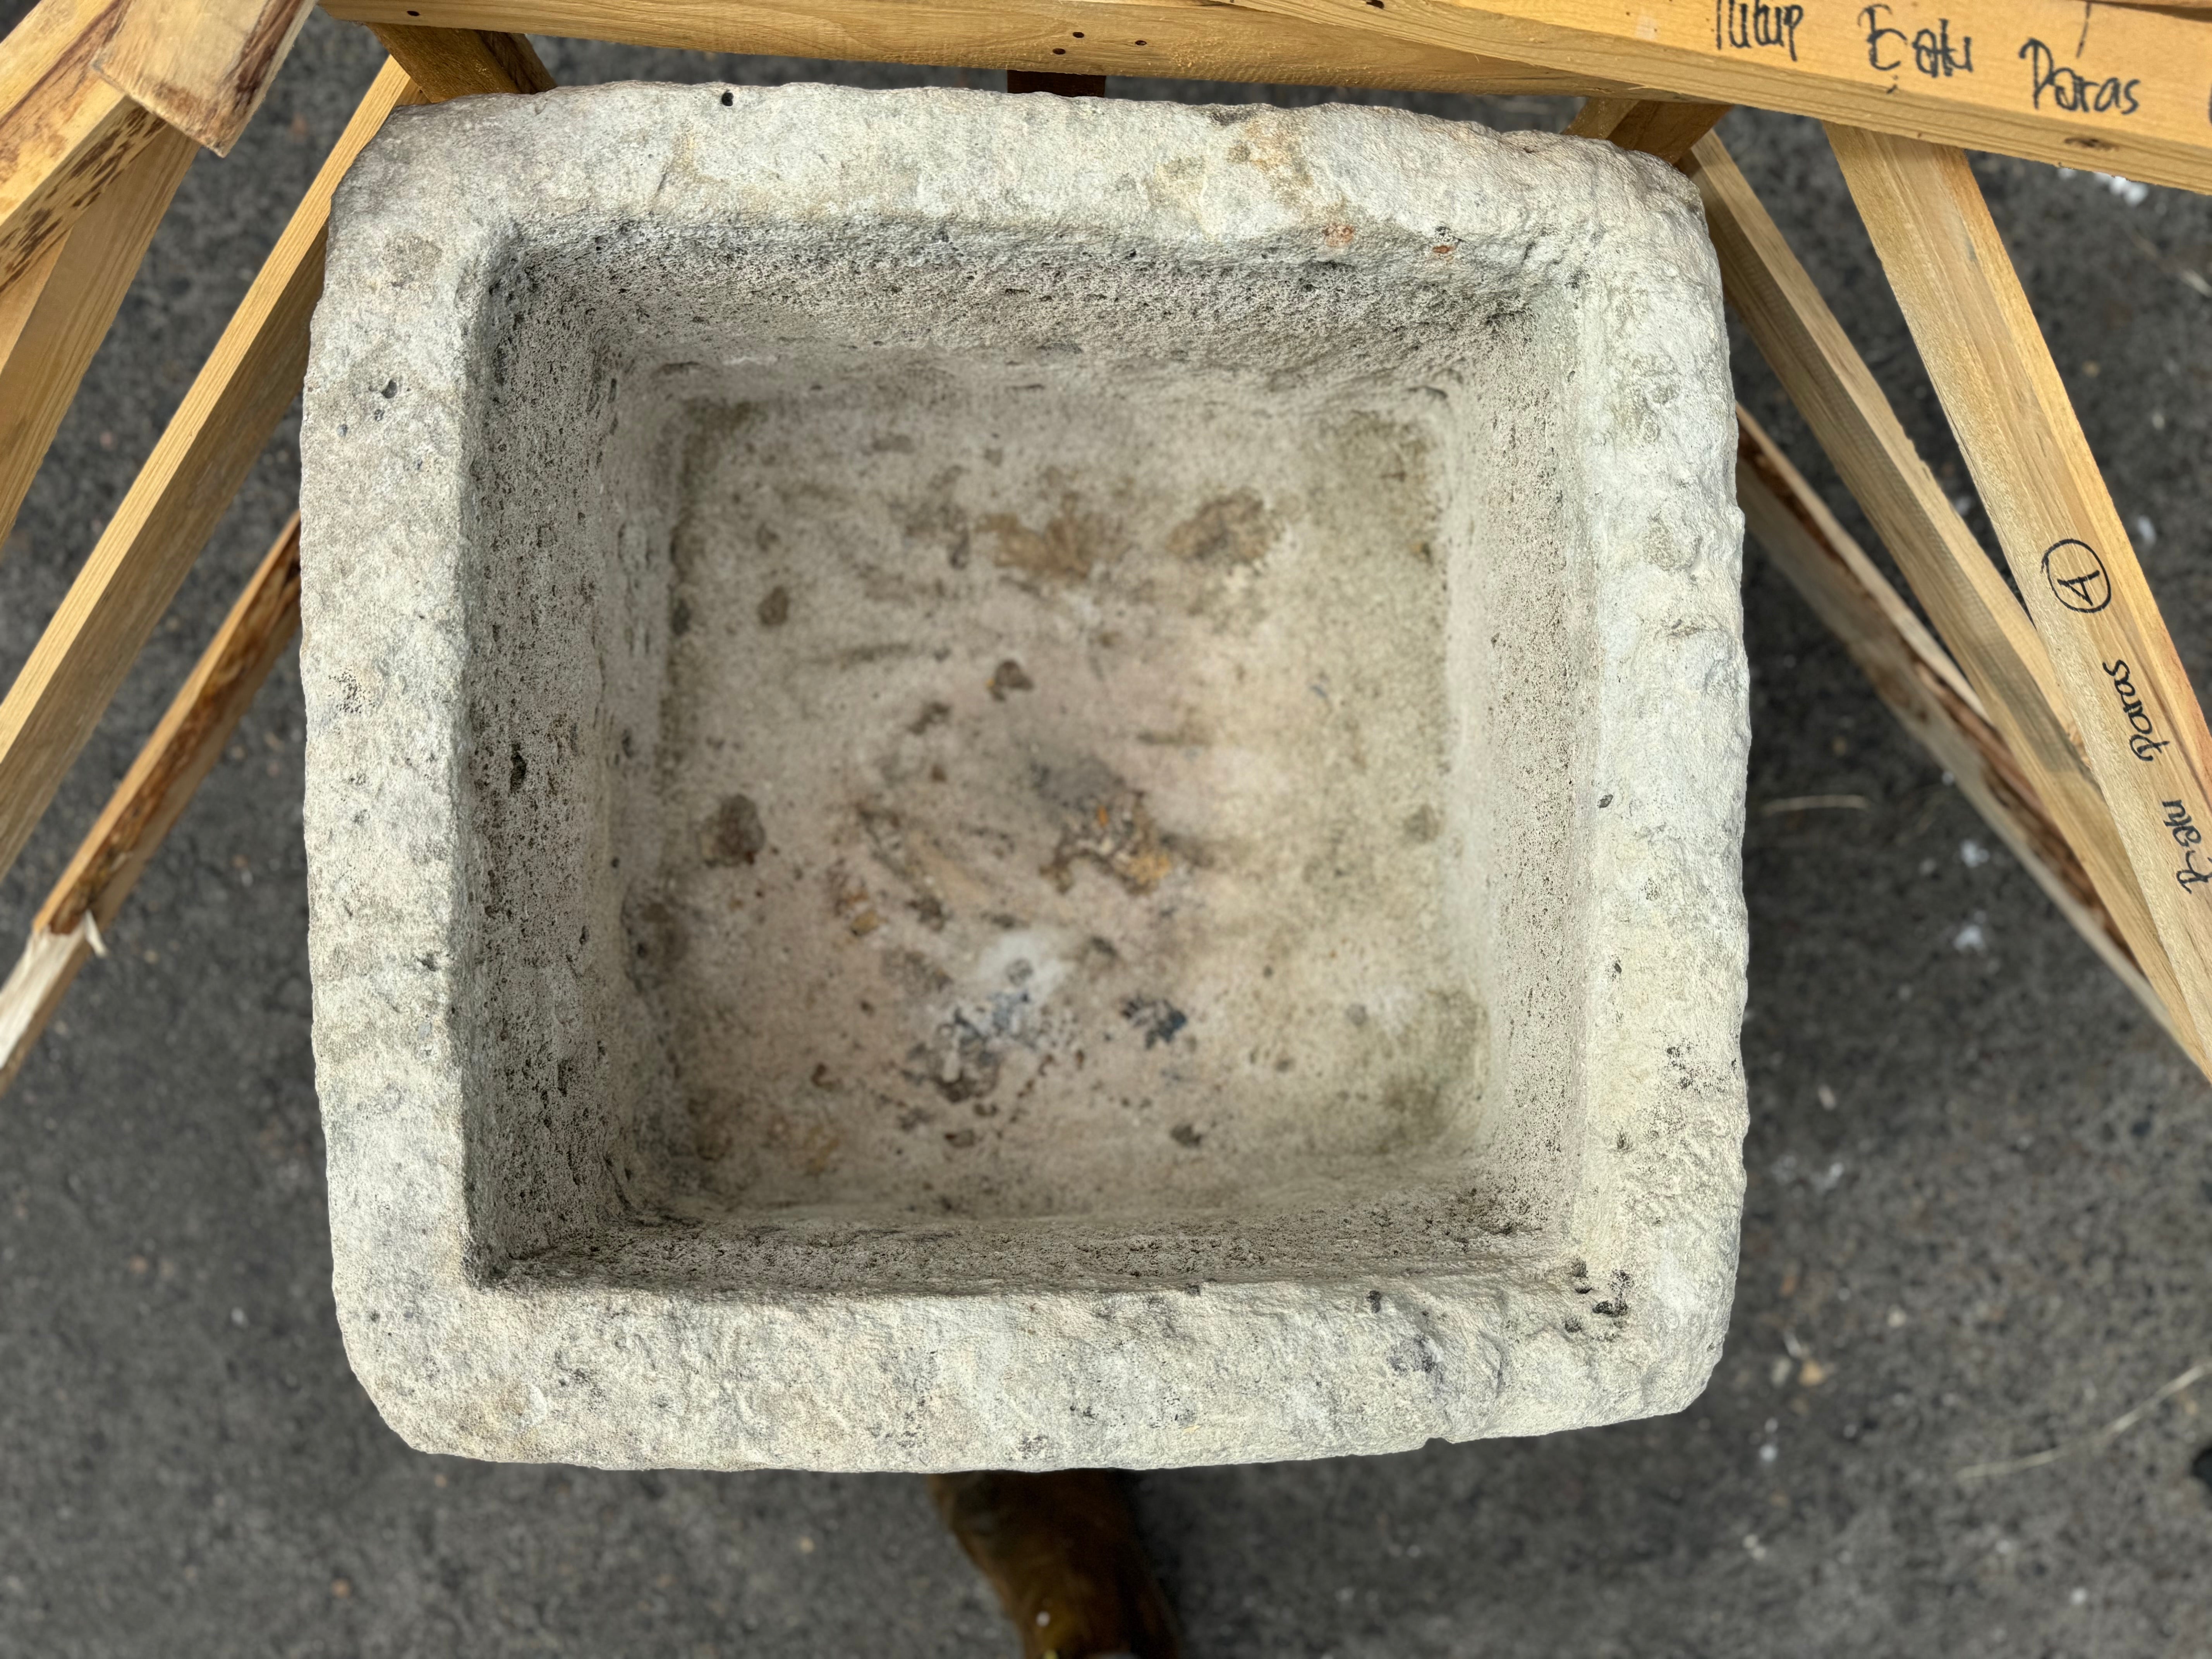 Hand Chiseled Limestone Plantar Box - 58 x 61 x 34 cm